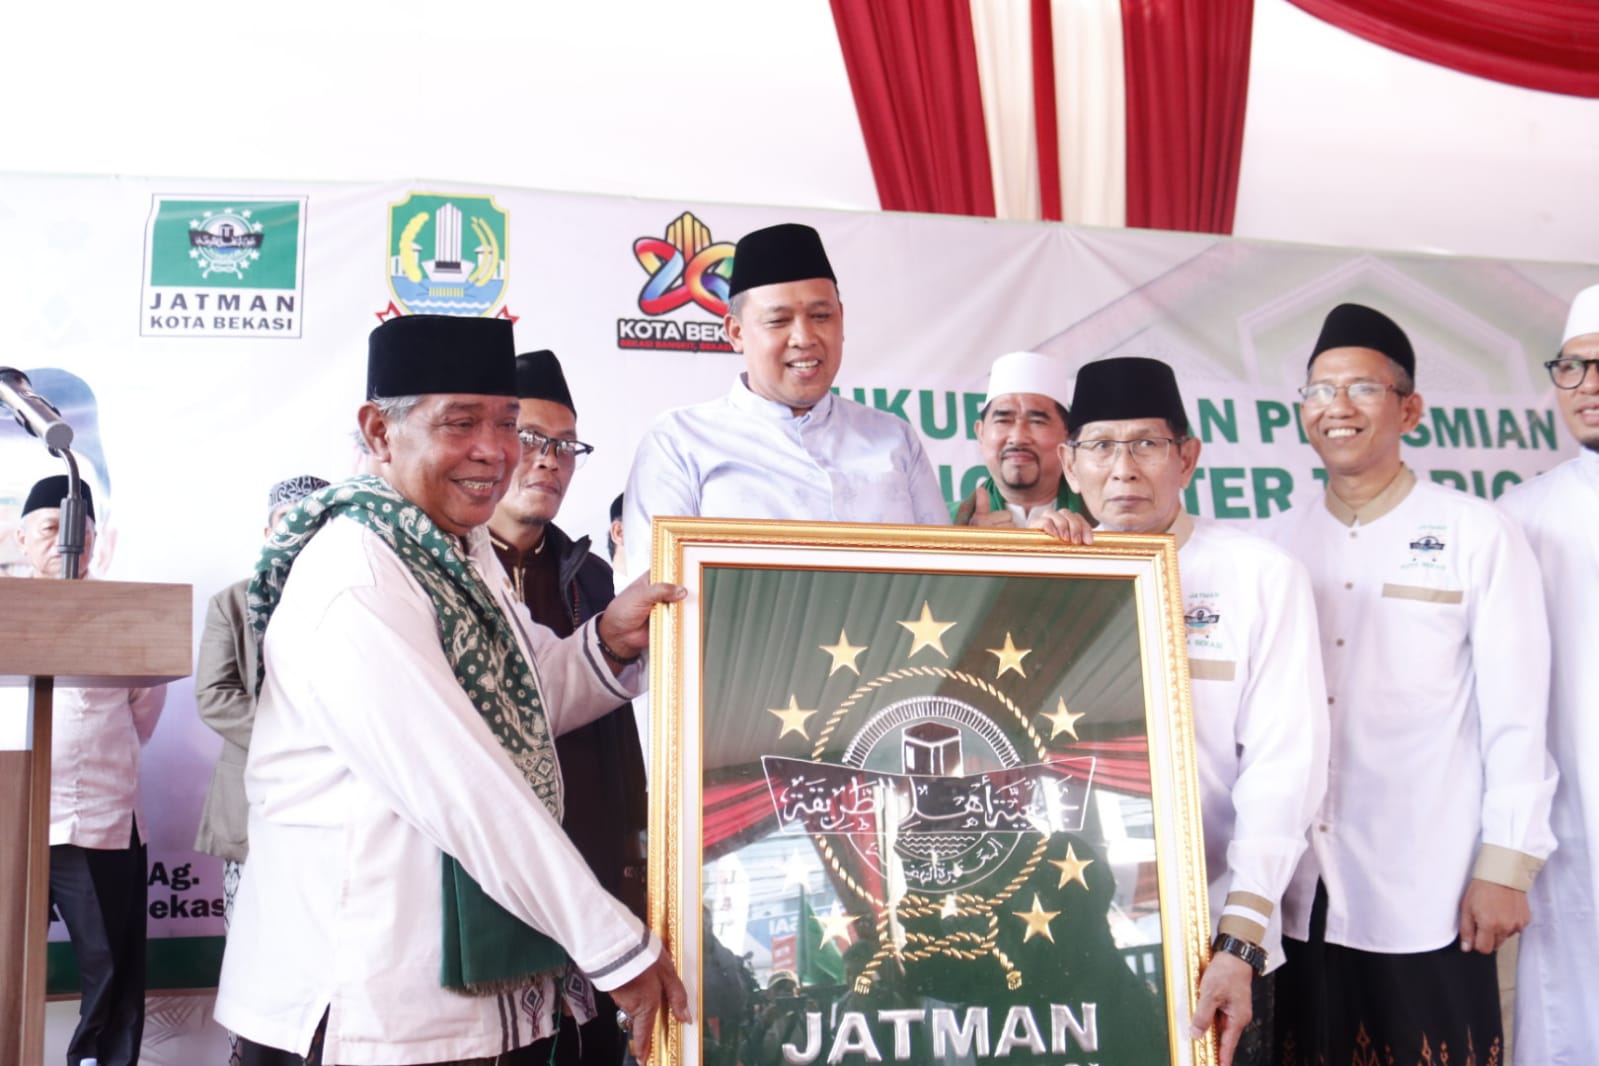 Tri Adhianto Hadiri Syukuran dan Peresmian Gedung Center Thariqah JATMAN Kota Bekasi